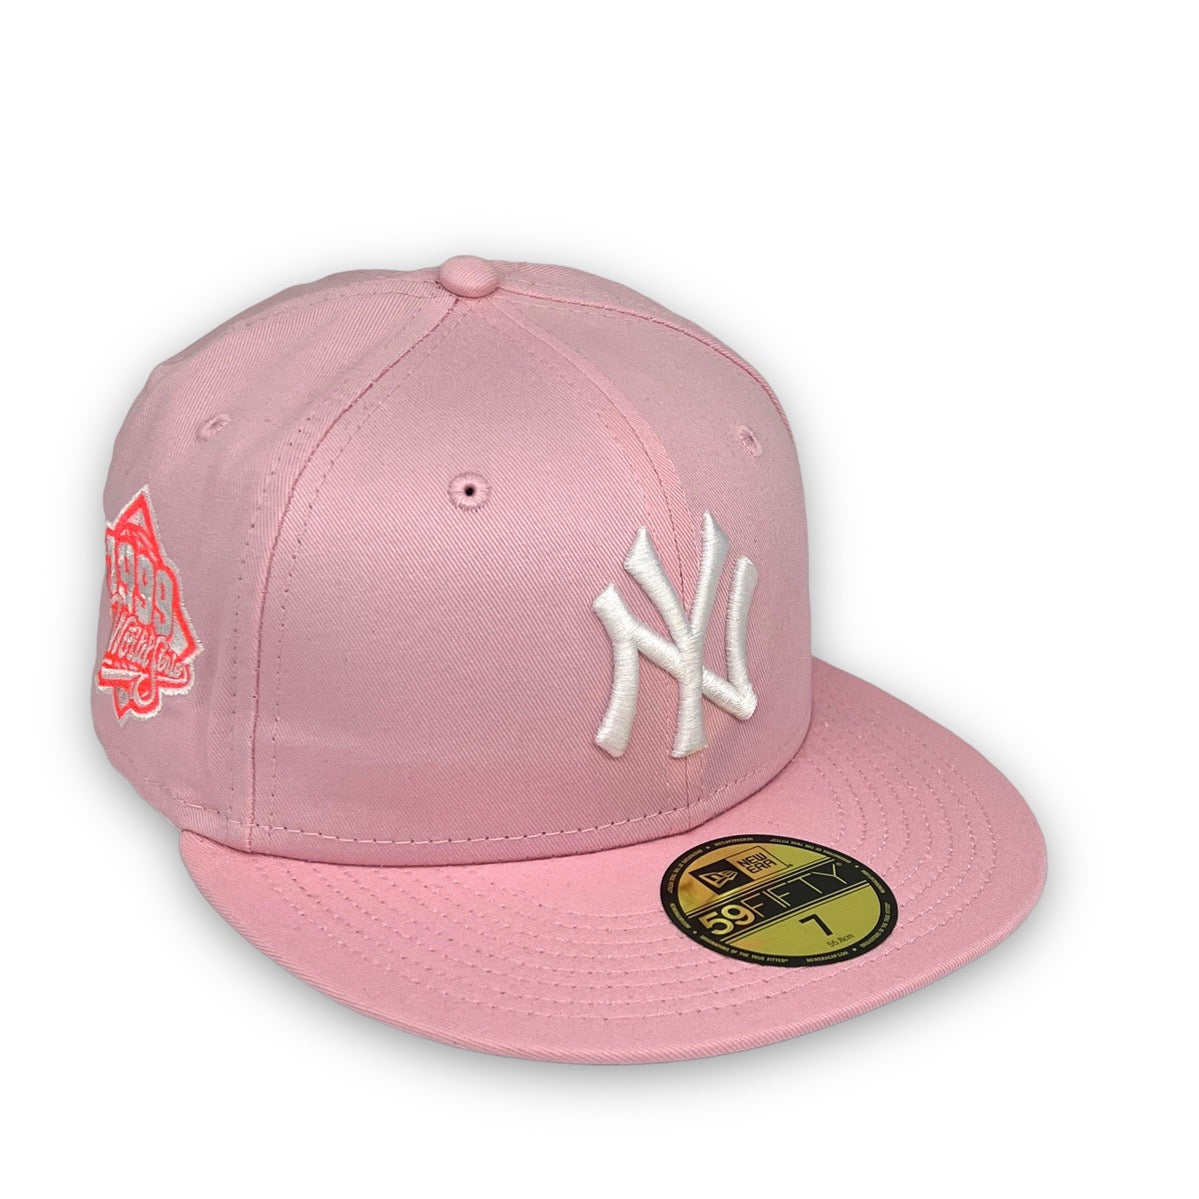 New York Yankees 1999 World Series purple cap pink UV NewEra 5950